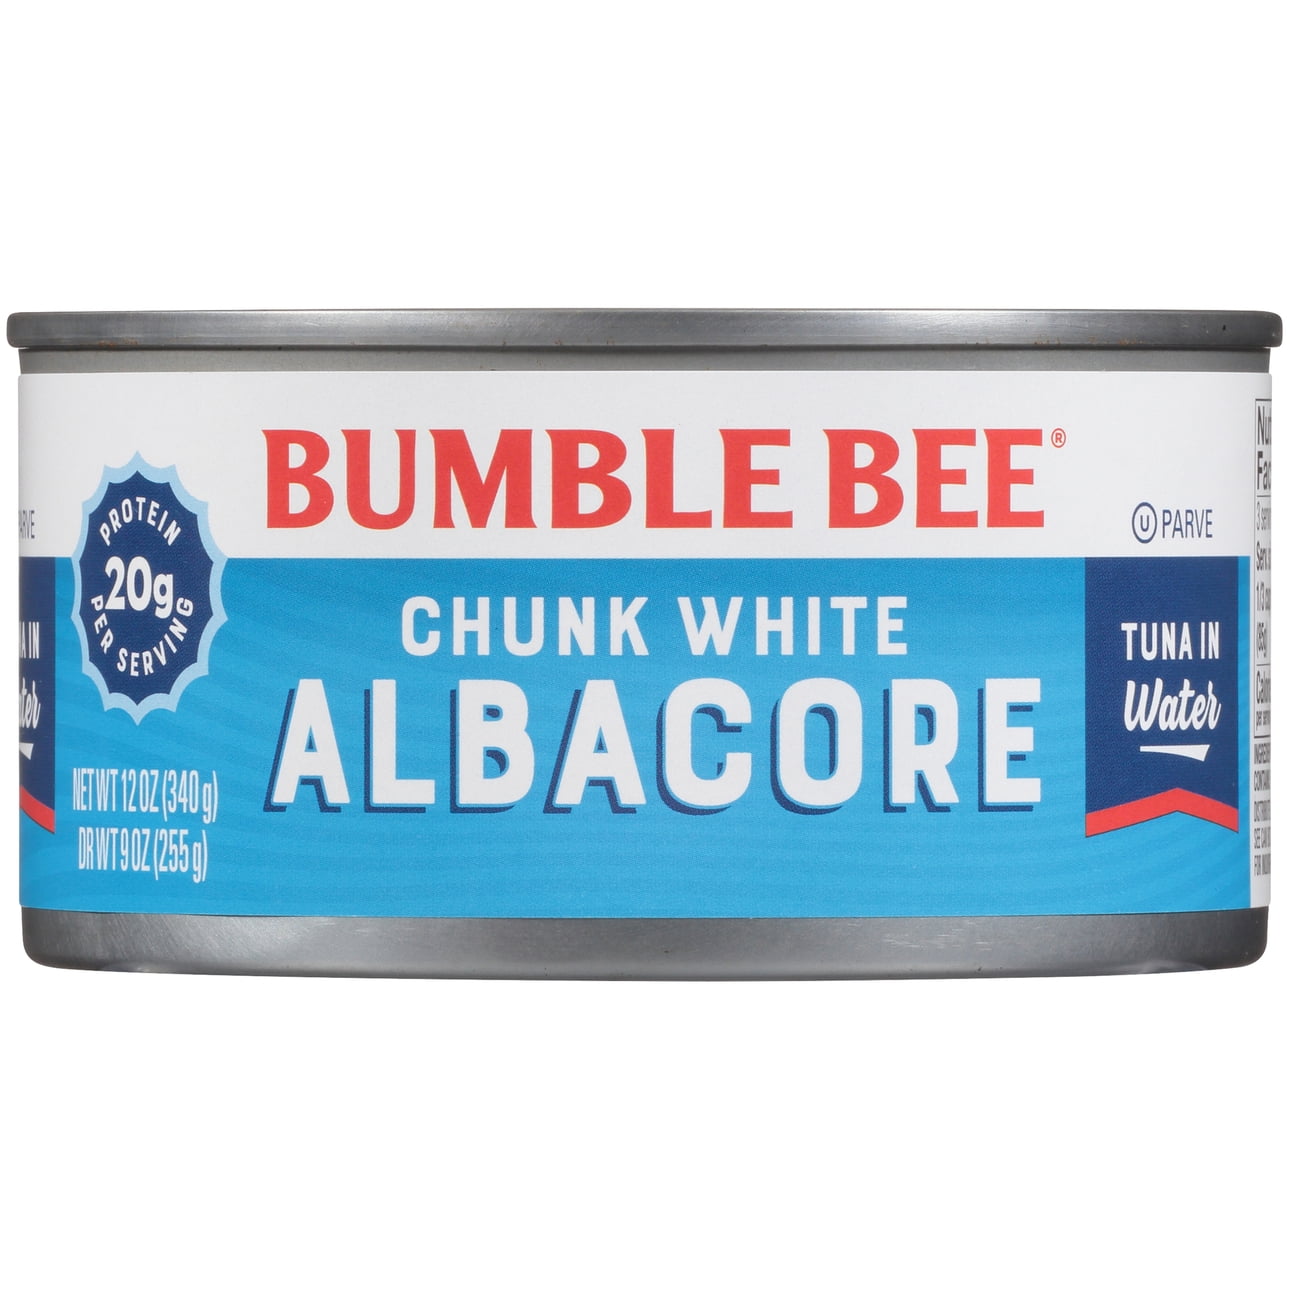 Bumble Bee Chunk White Albacore Tuna in Water, 12 oz can